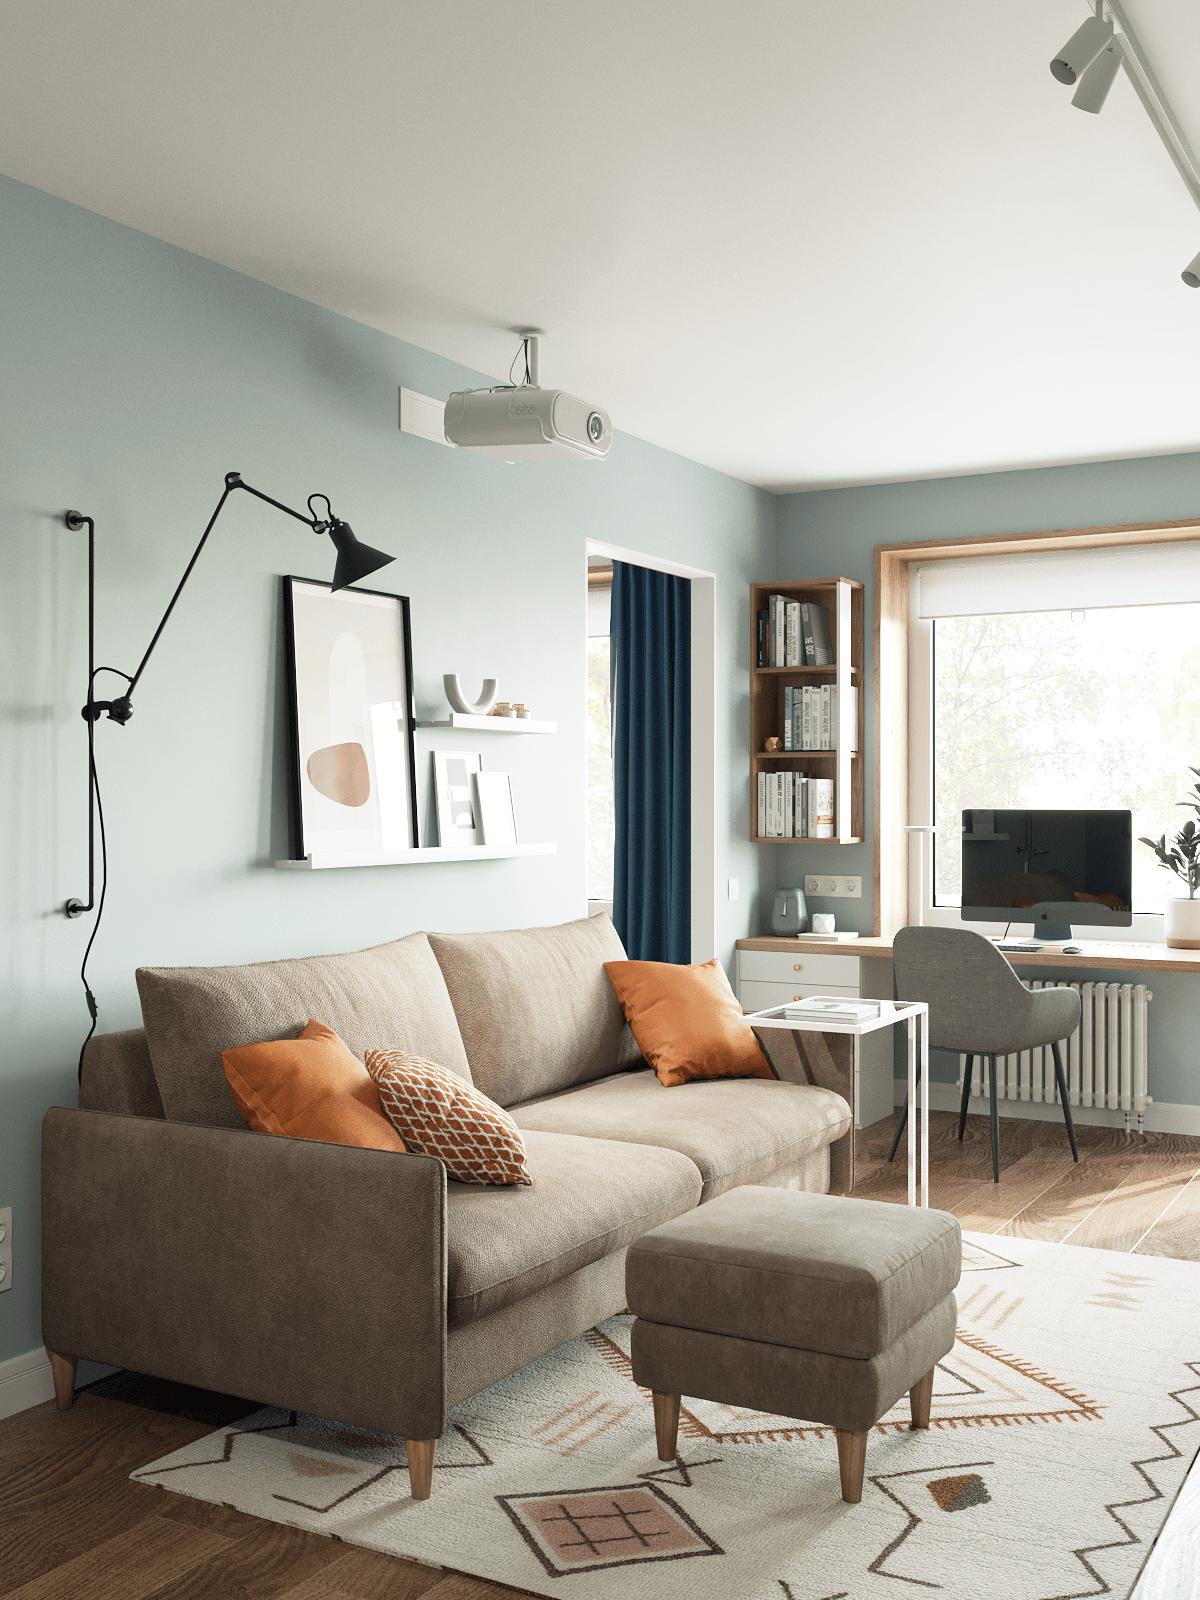 Phòng khách với bộ ghế màu be đậm êm ái, nổi bật những chiếc gối tựa màu cam ấm áp. Chiếc đèn gắn tường bố trí sau sofa, có thể điều chỉnh độ cao để cung cấp ánh sáng cho gia chủ.